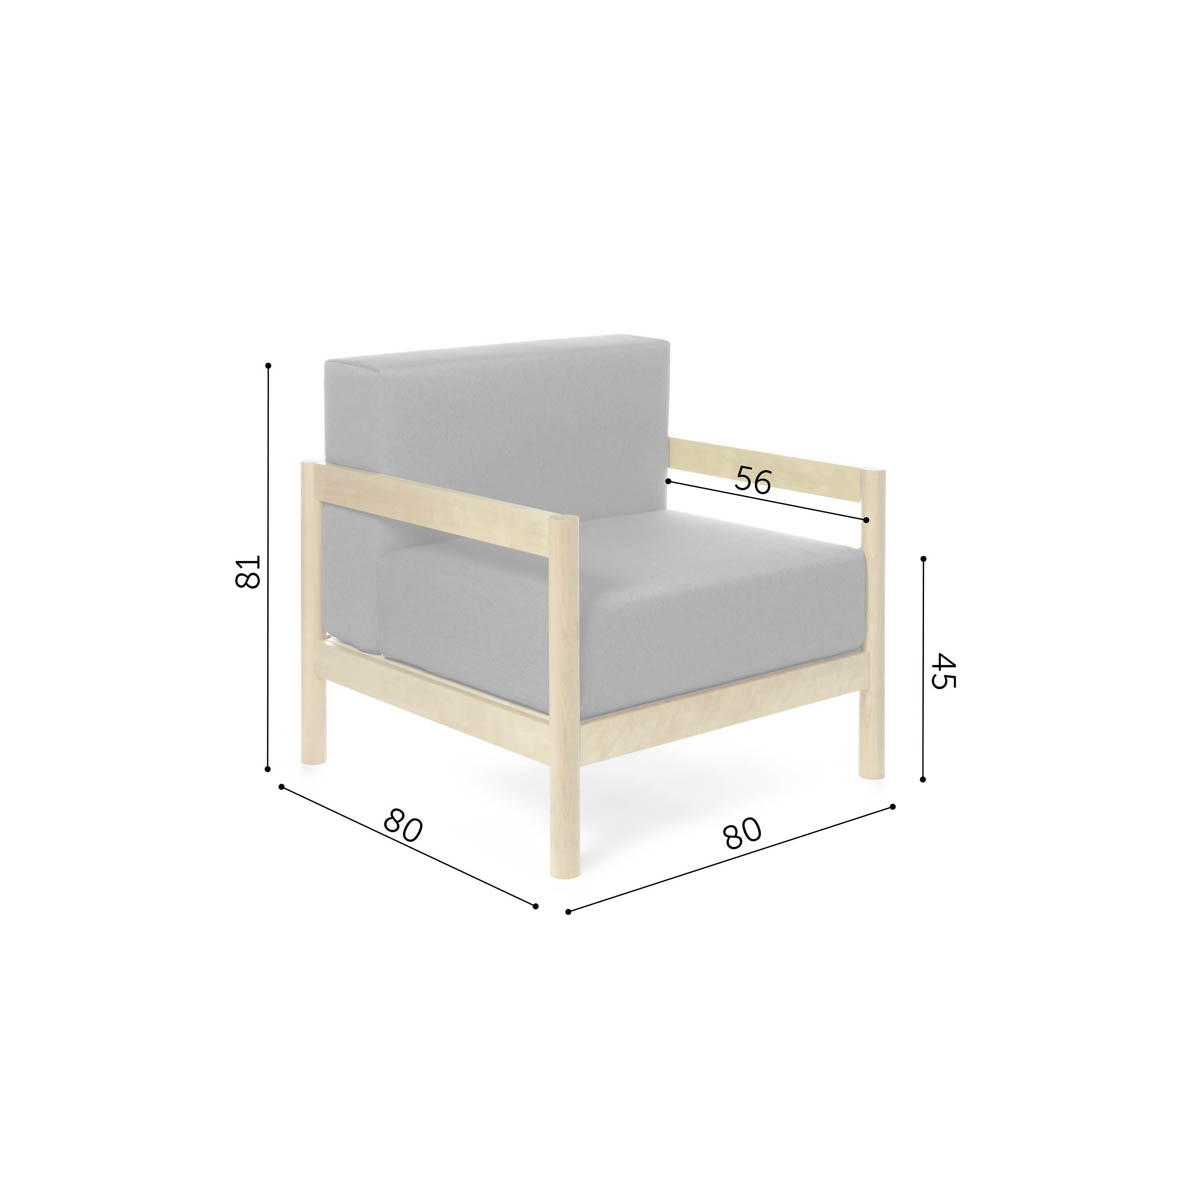 1-seater rahu sofa dimensions